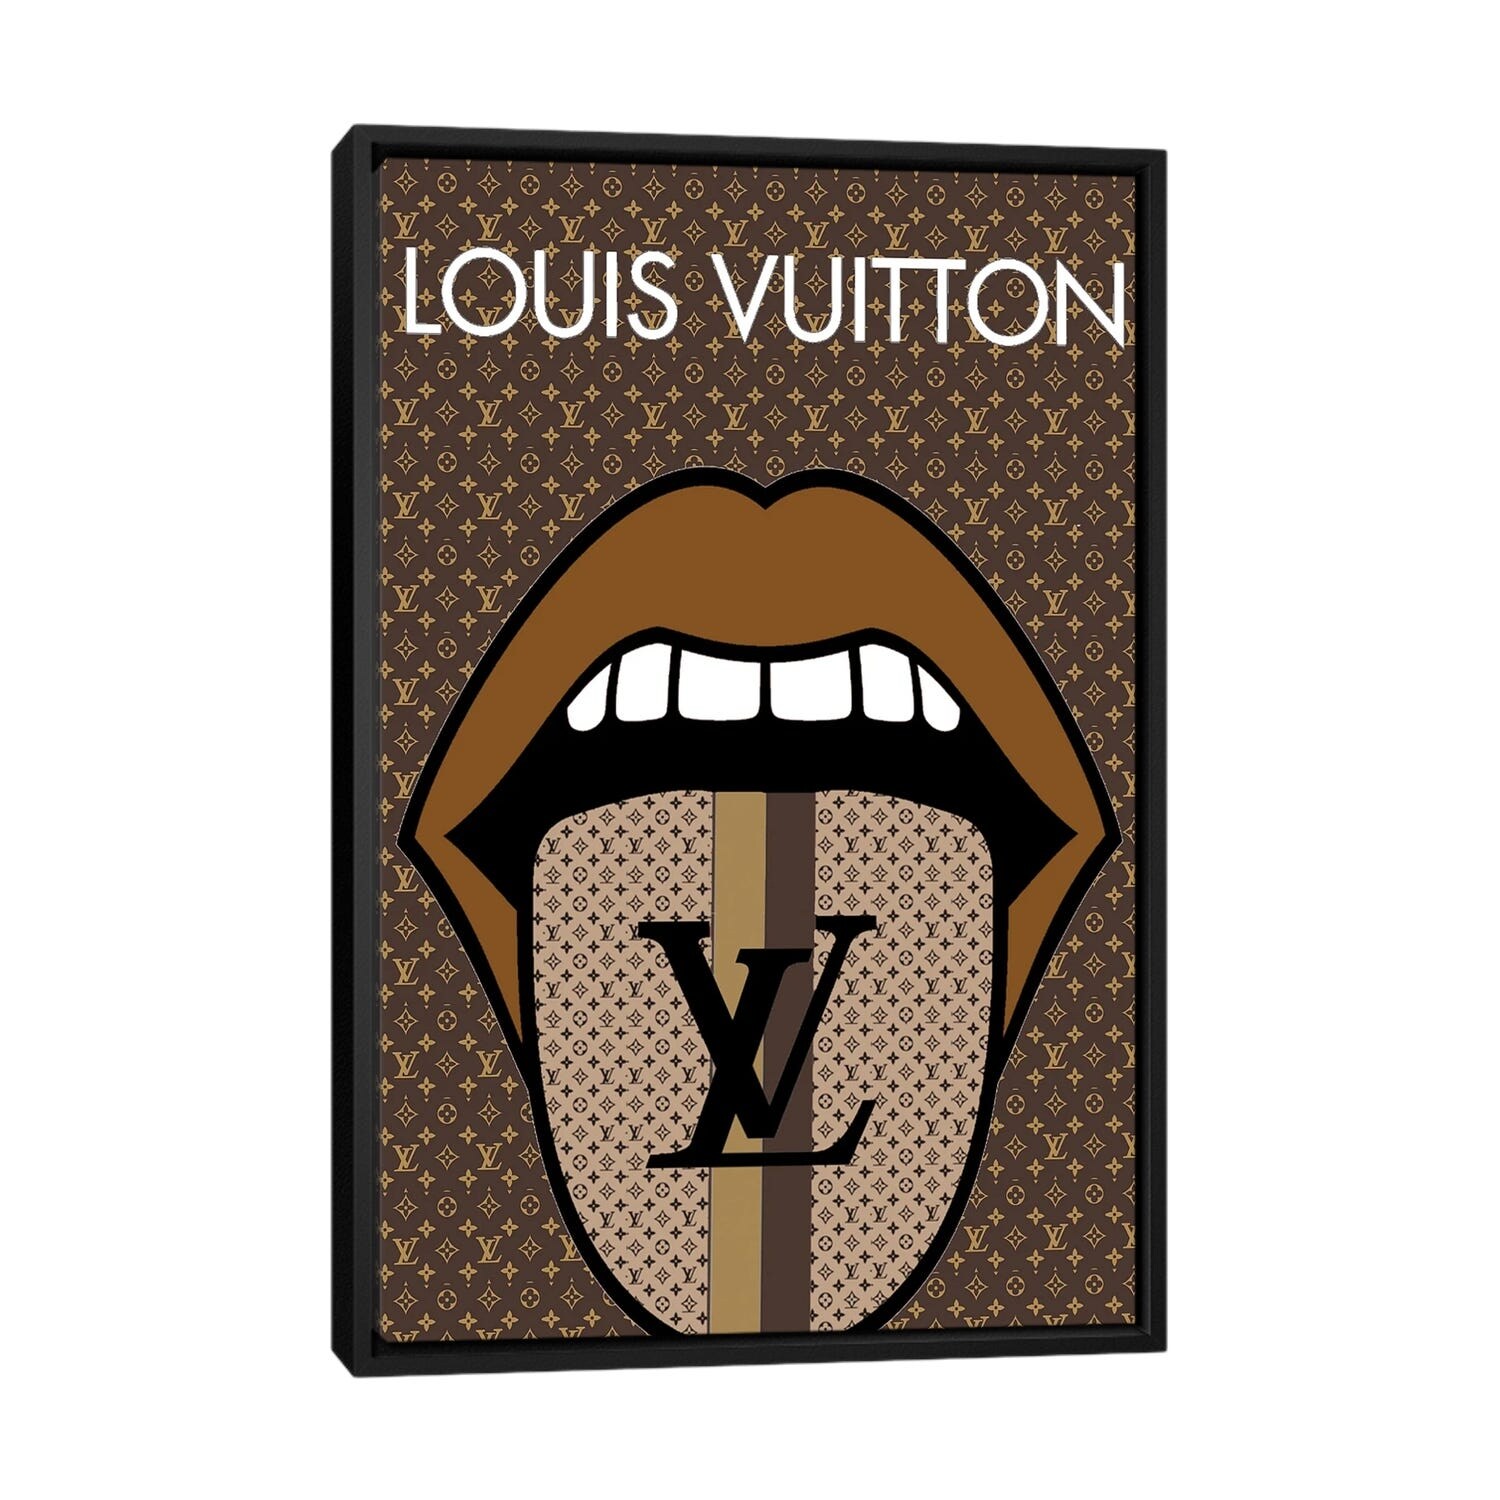 Louis Vuitton Logo Pop Art Art Print by Julie Schreiber